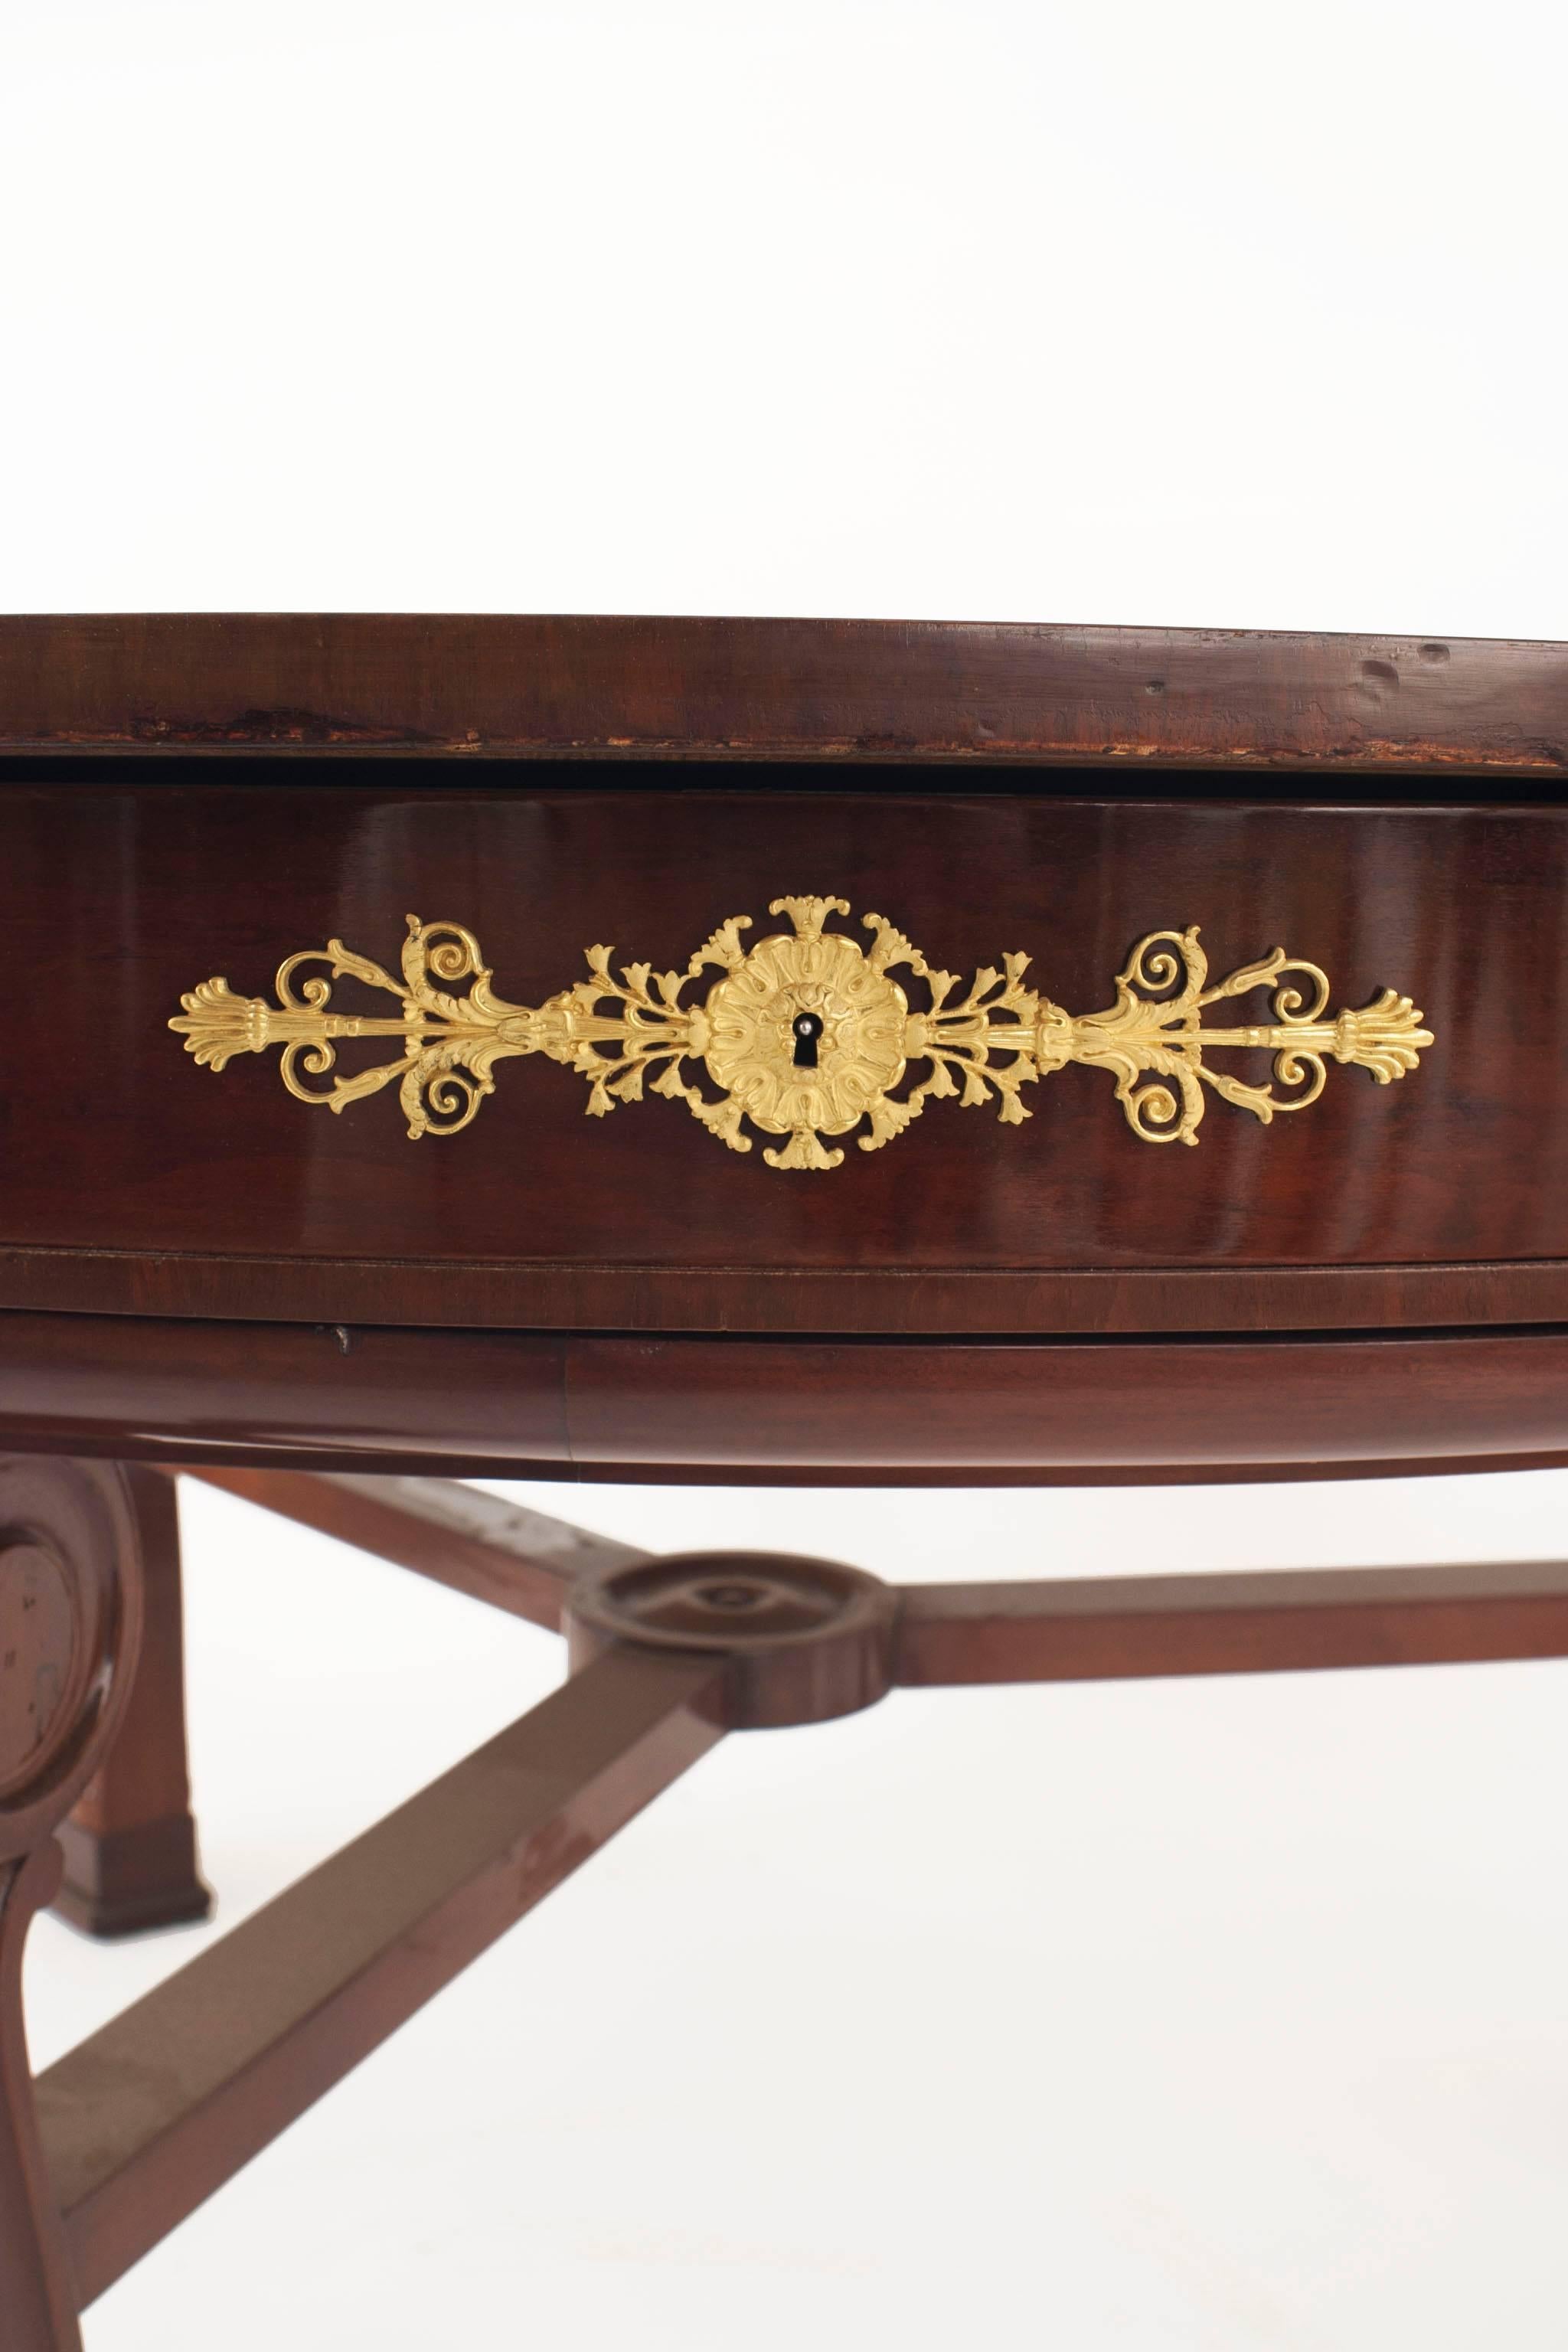 Table ronde Empire en acajou et bronze doré reposant sur 3 pieds avec un plateau tournant en cuir marron et médaillons perlés sur 6 tiroirs et un brancard (estampillé : Potheau).
